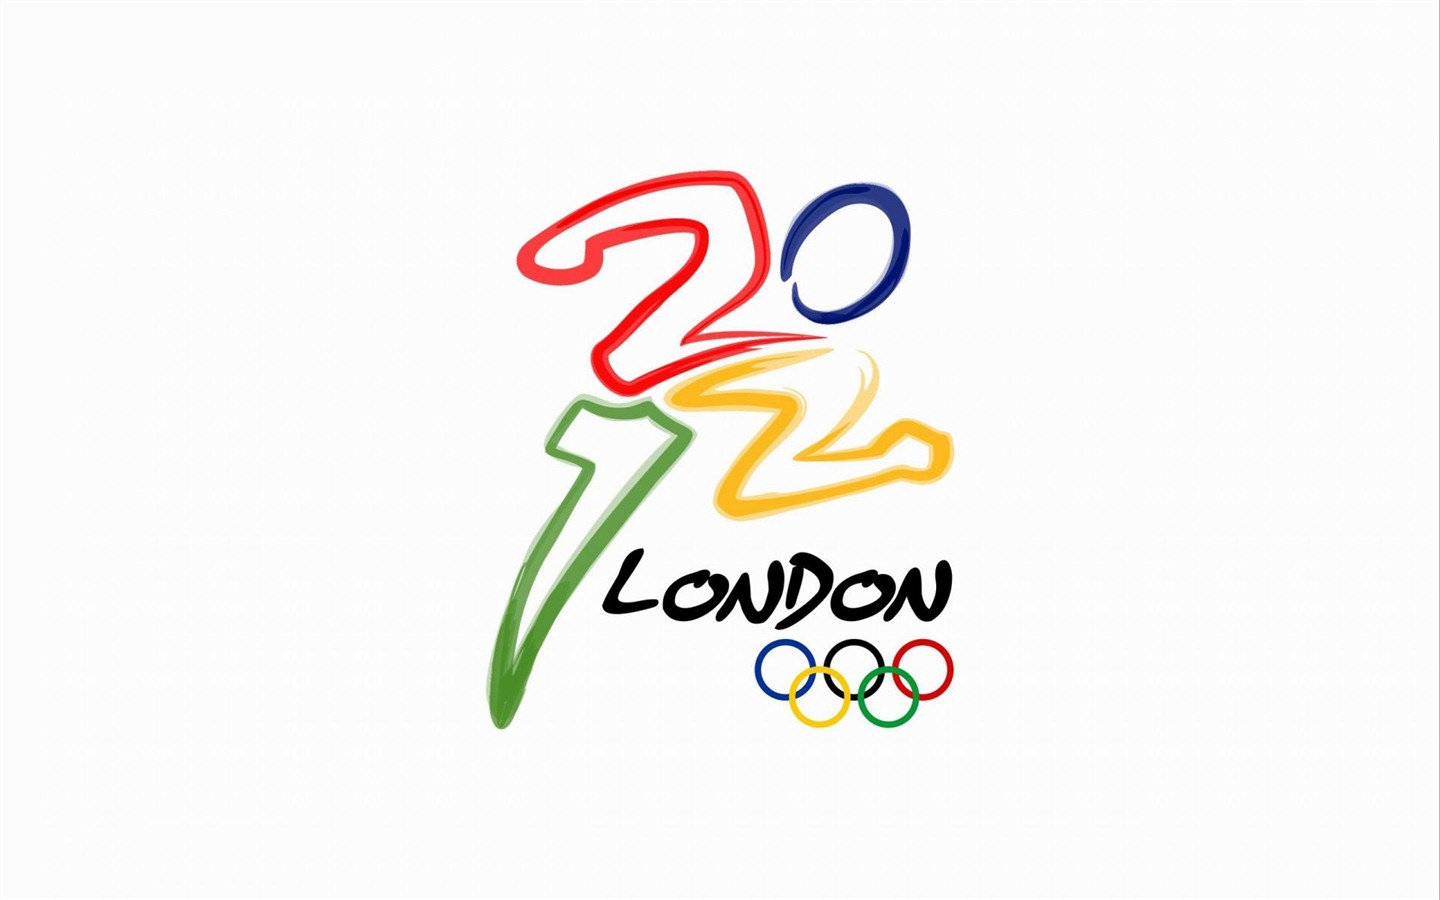 2012伦敦奥运会 主题壁纸(二)22 - 1440x900